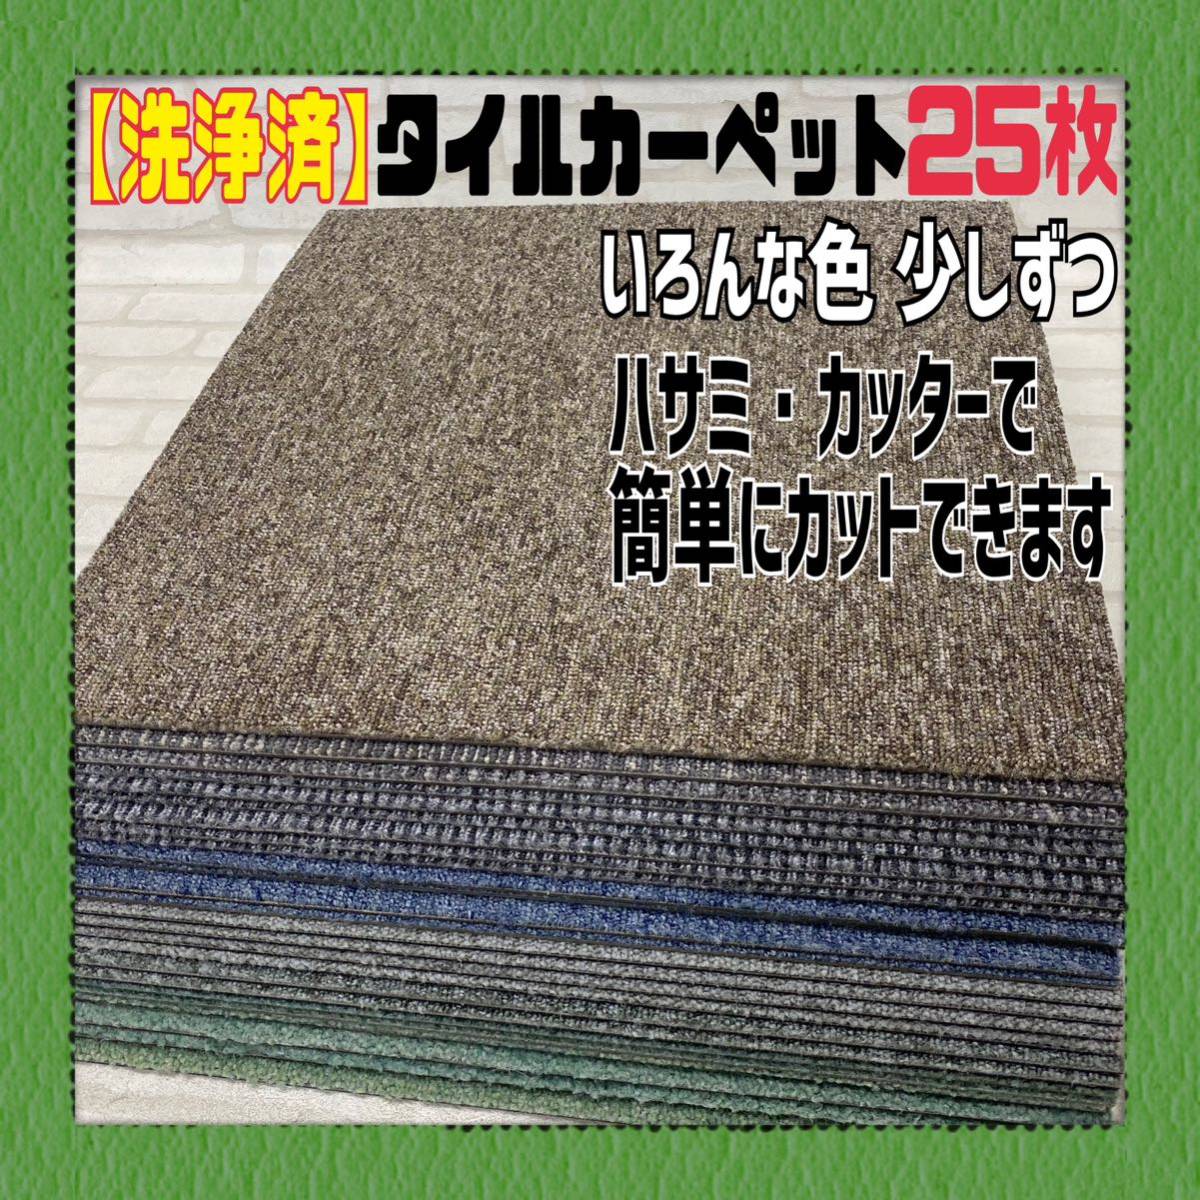 ◆38【洗浄済】いろんな色 タイルカーペット 25枚 50×50cm DIY 内装 床材 マット 絨毯 ペット 現場プレハブ 物置 荷室 1枚あたり60円〜 _画像1